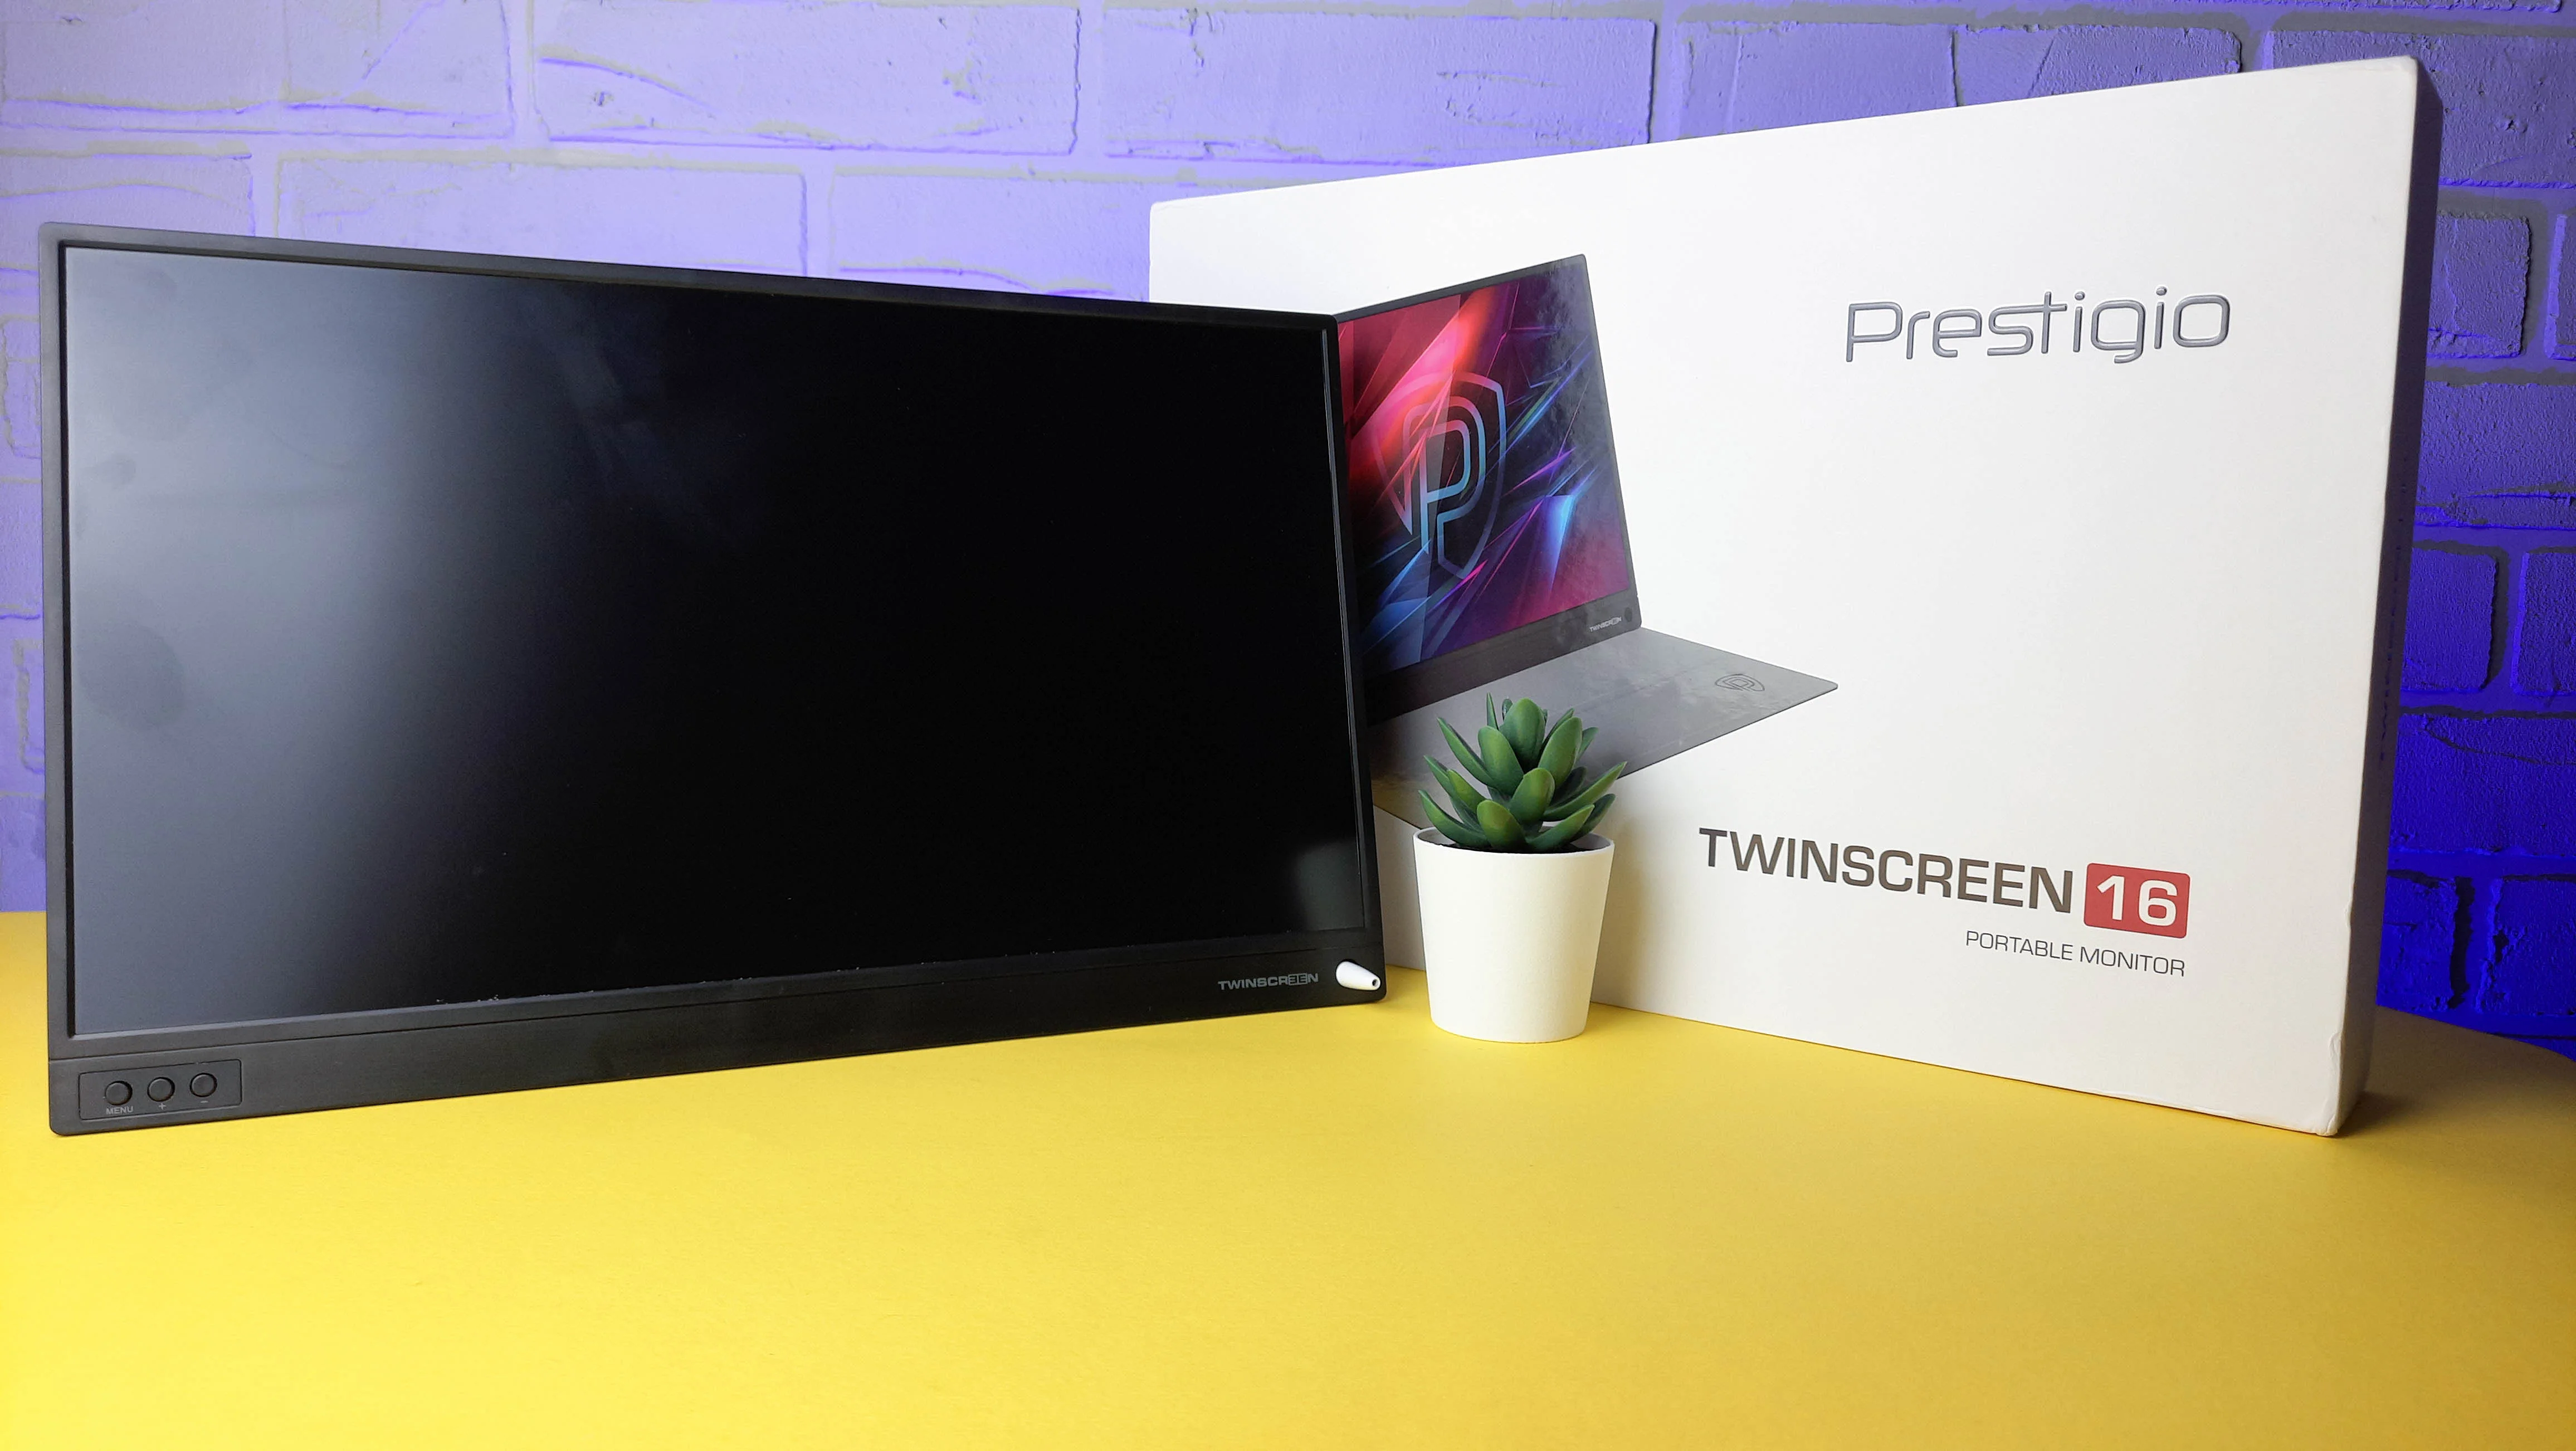 Обзор Prestigio Twinscreen 16: портативный дисплей для игр и работы - фото 1